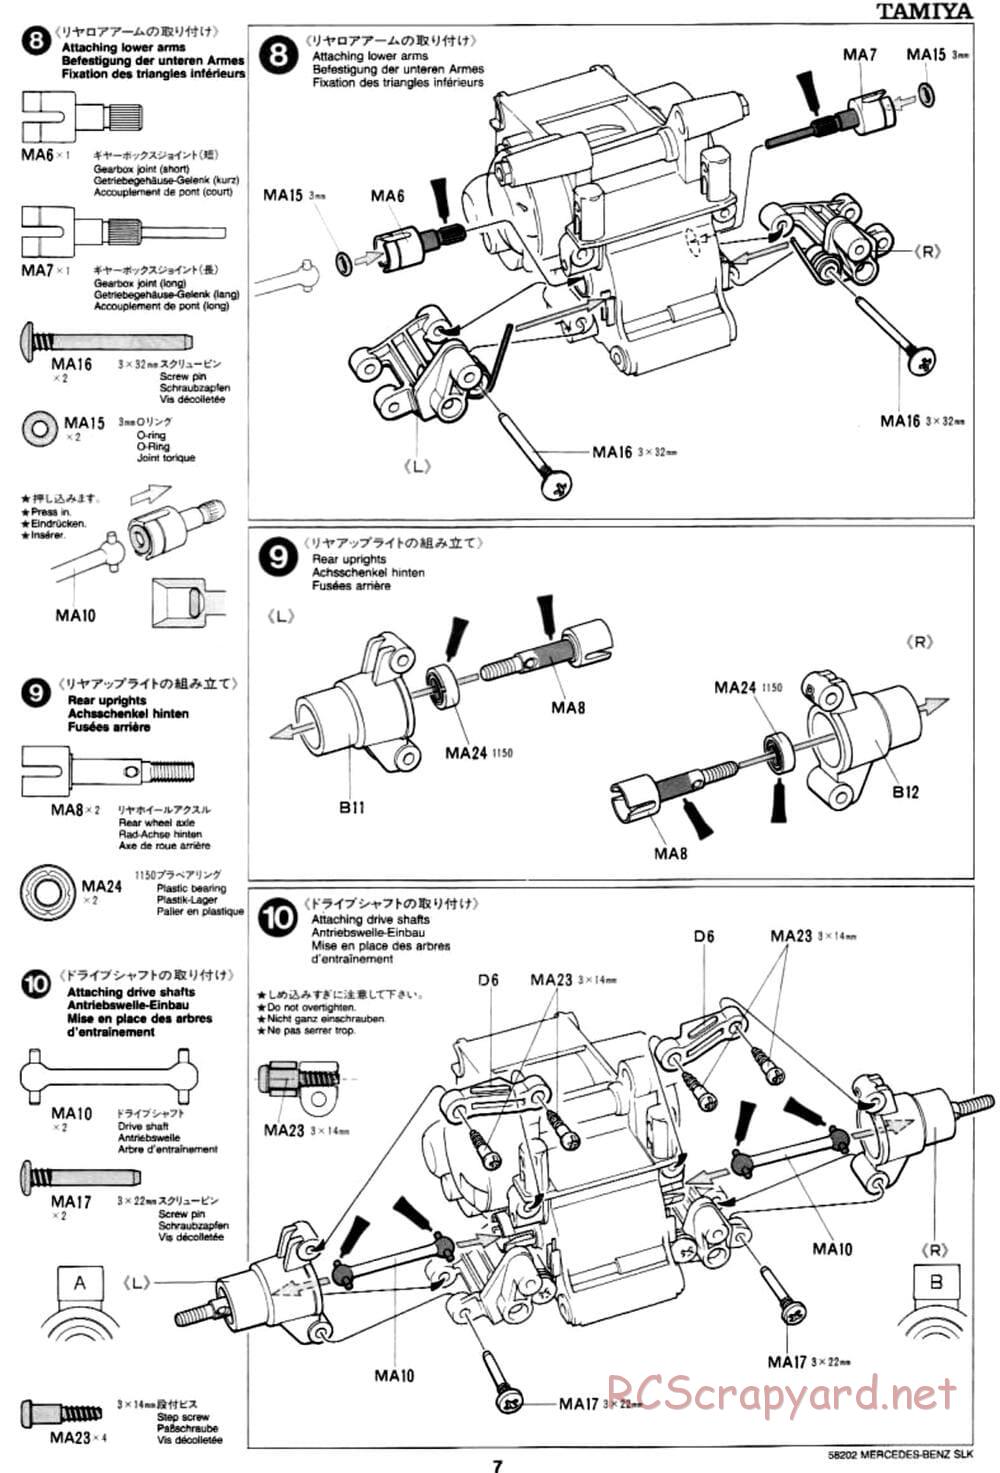 Tamiya - Mercedes-Benz SLK - M02L Chassis - Manual - Page 7